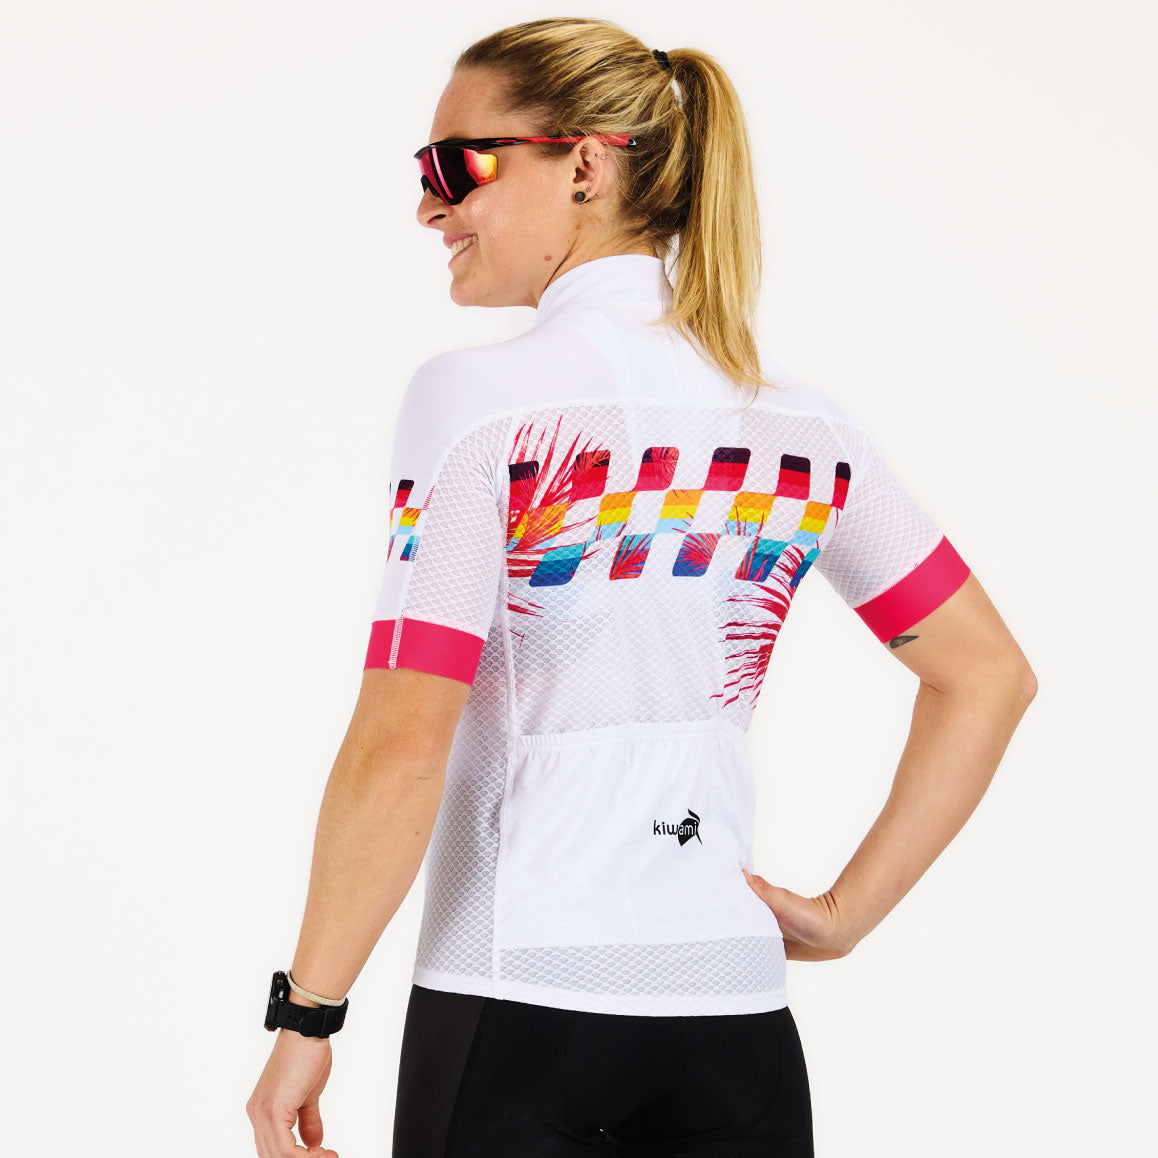 maillot vélo pour femme conçu pour un maximum de confort ultra respirant fabrication française